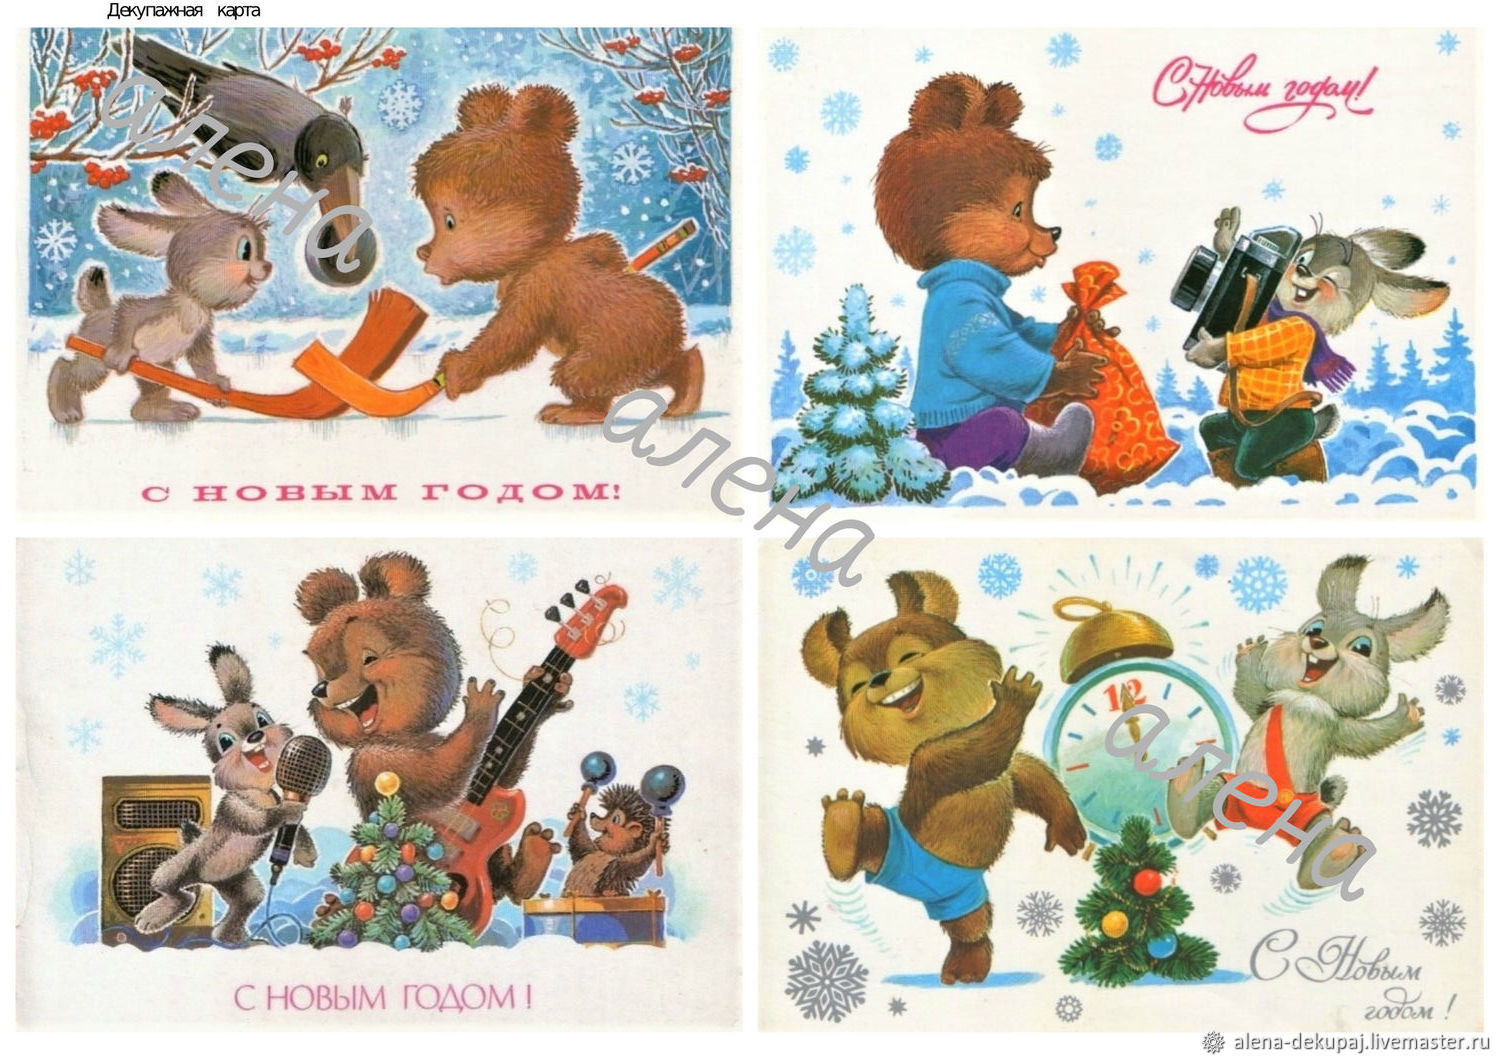 Коллаж из советских открыток с новым годом